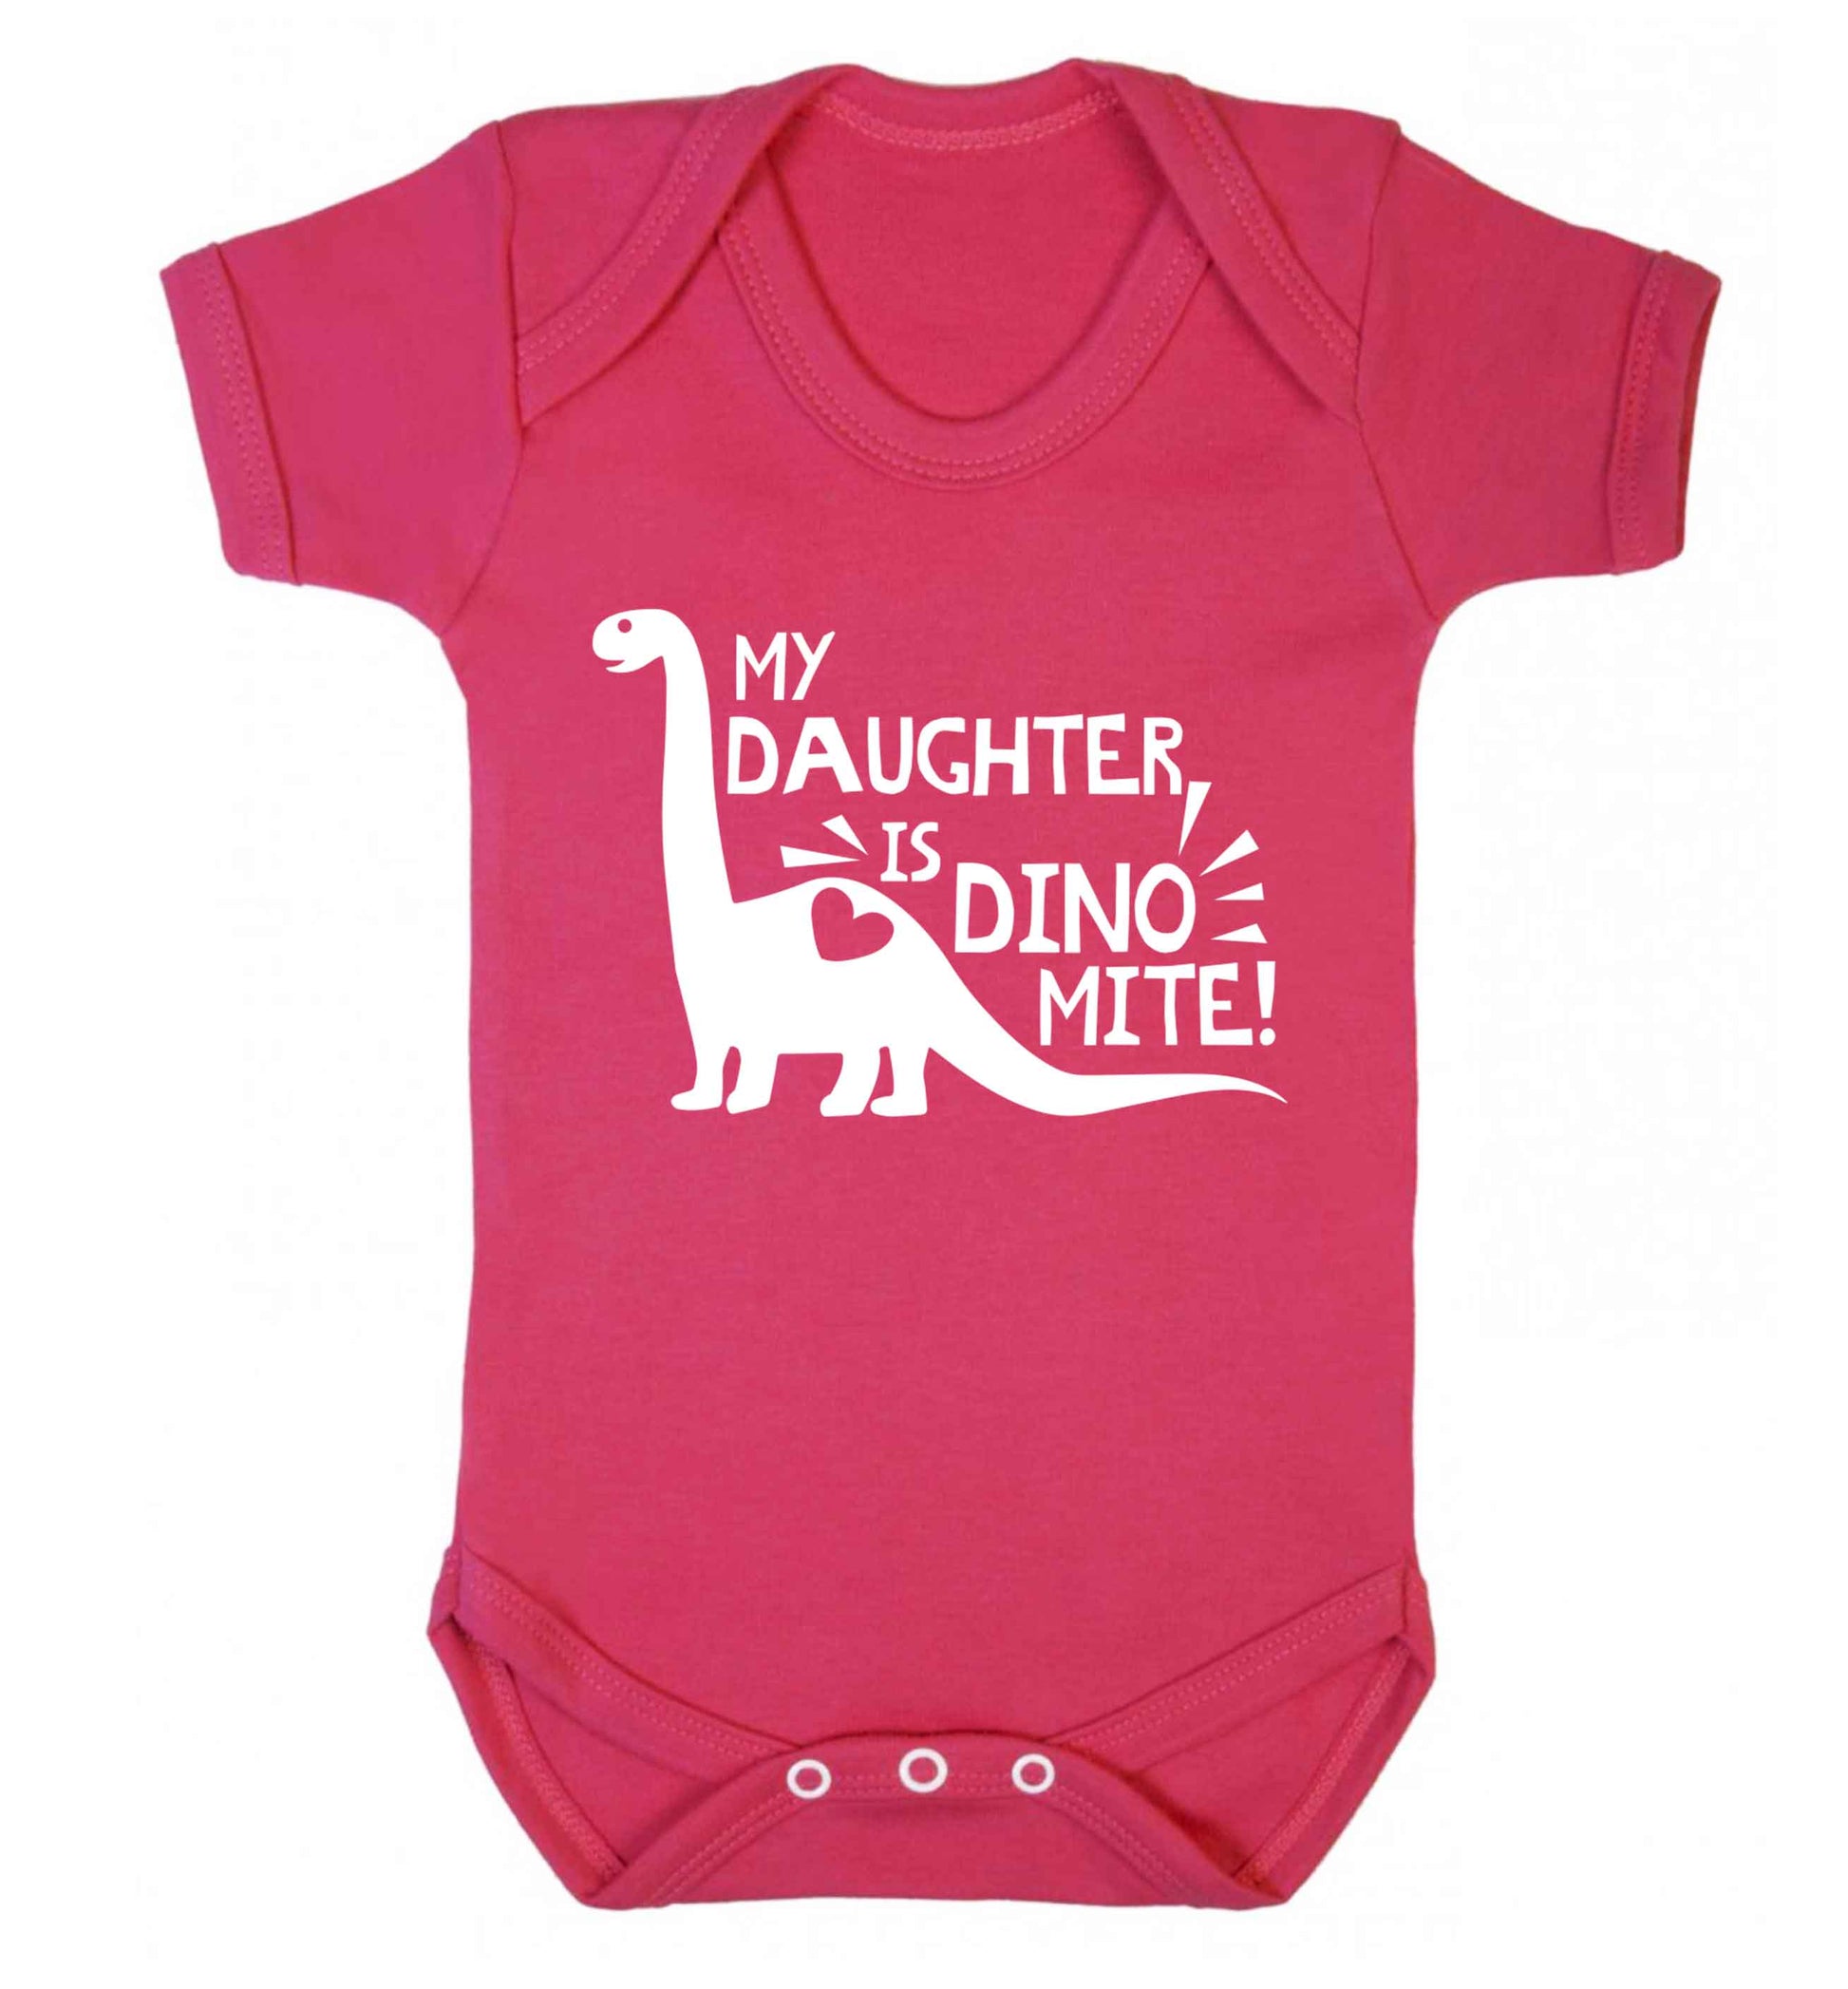 My daughter is dinomite! Baby Vest dark pink 18-24 months